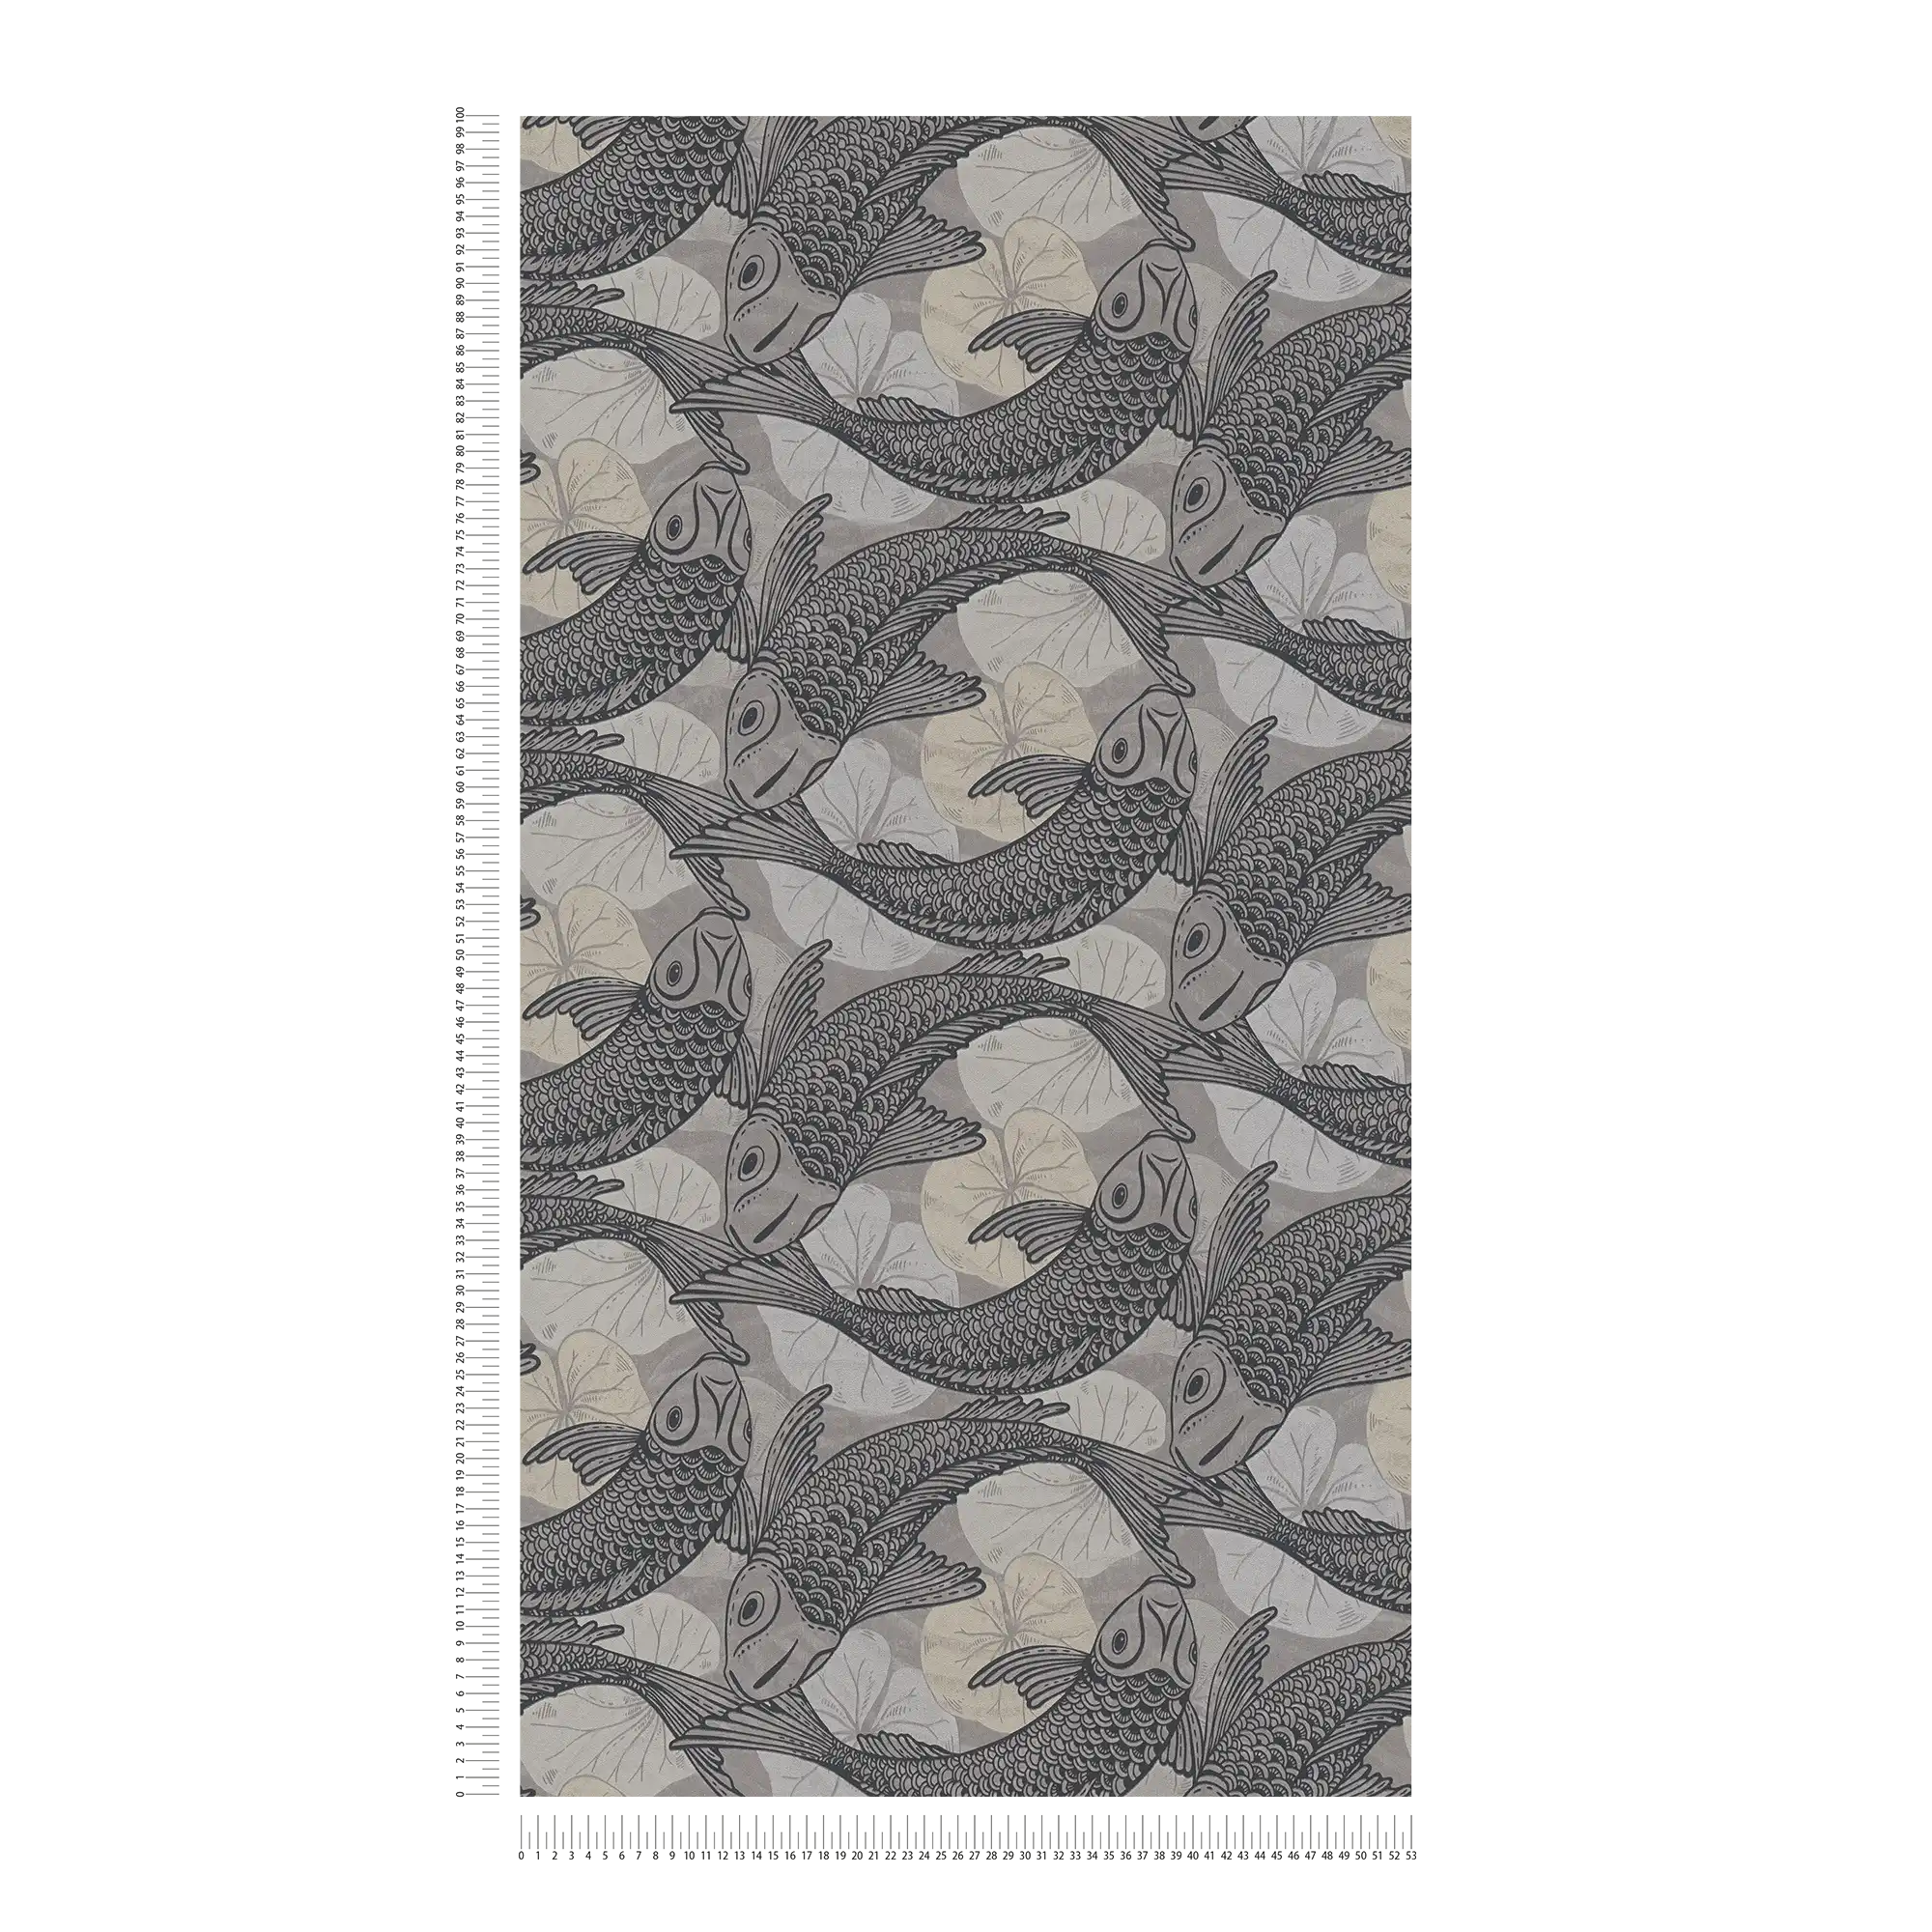             behang Aziatisch design met Koi motief & metallic effect - beige, grijs, zwart
        